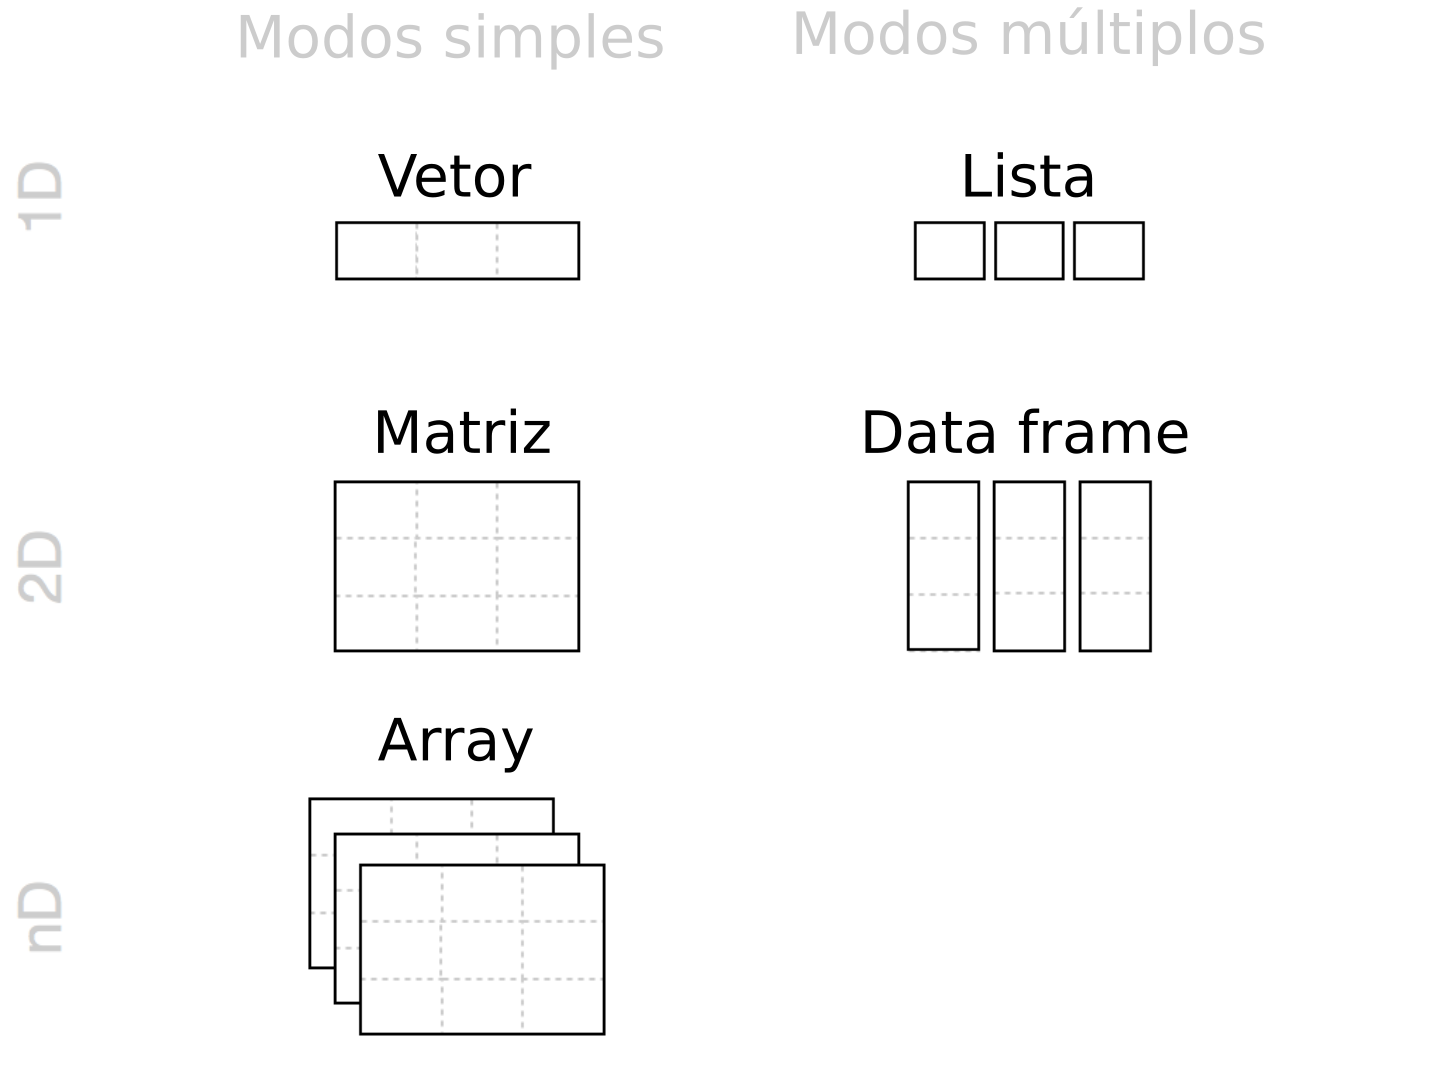 Estruturas de dados mais comuns no R: vetores, matrizes, arrays, listas e data frames. Adaptado de: Grolemund [-@grolemund2014].